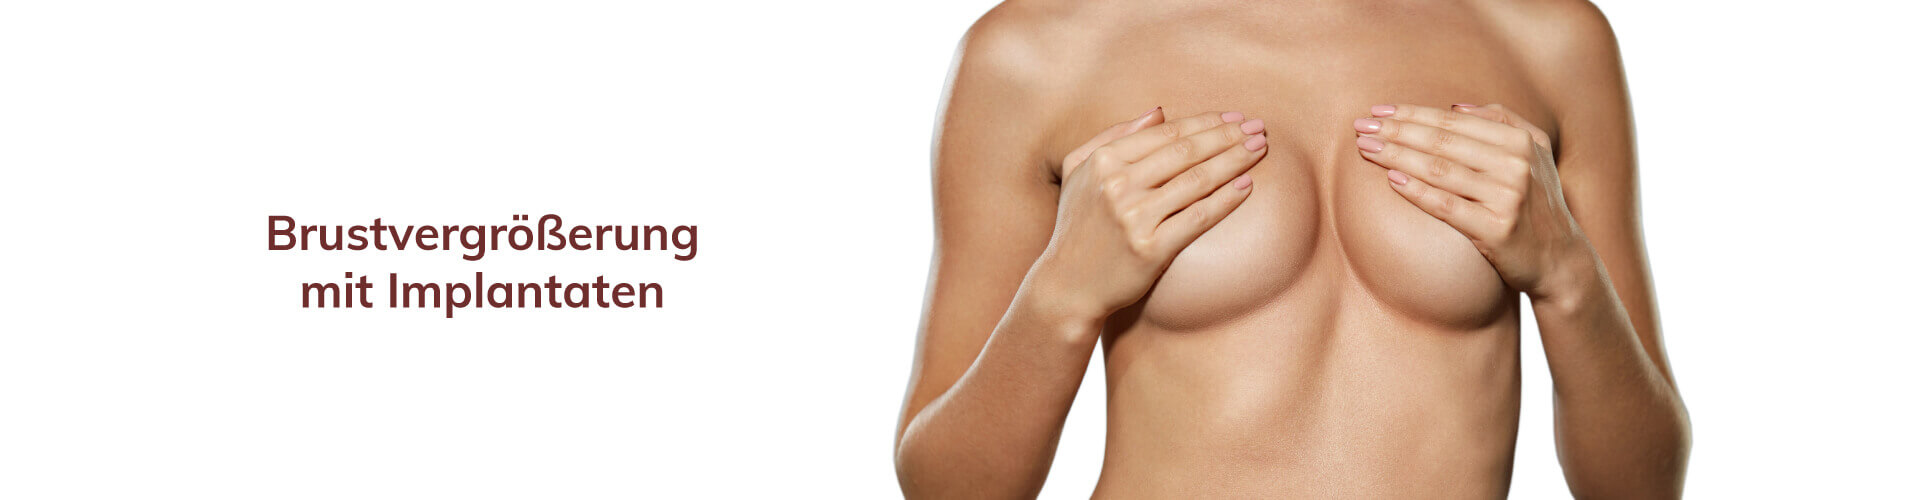 pro brust Heidelberg Brustvergrößerung mit Implantaten 